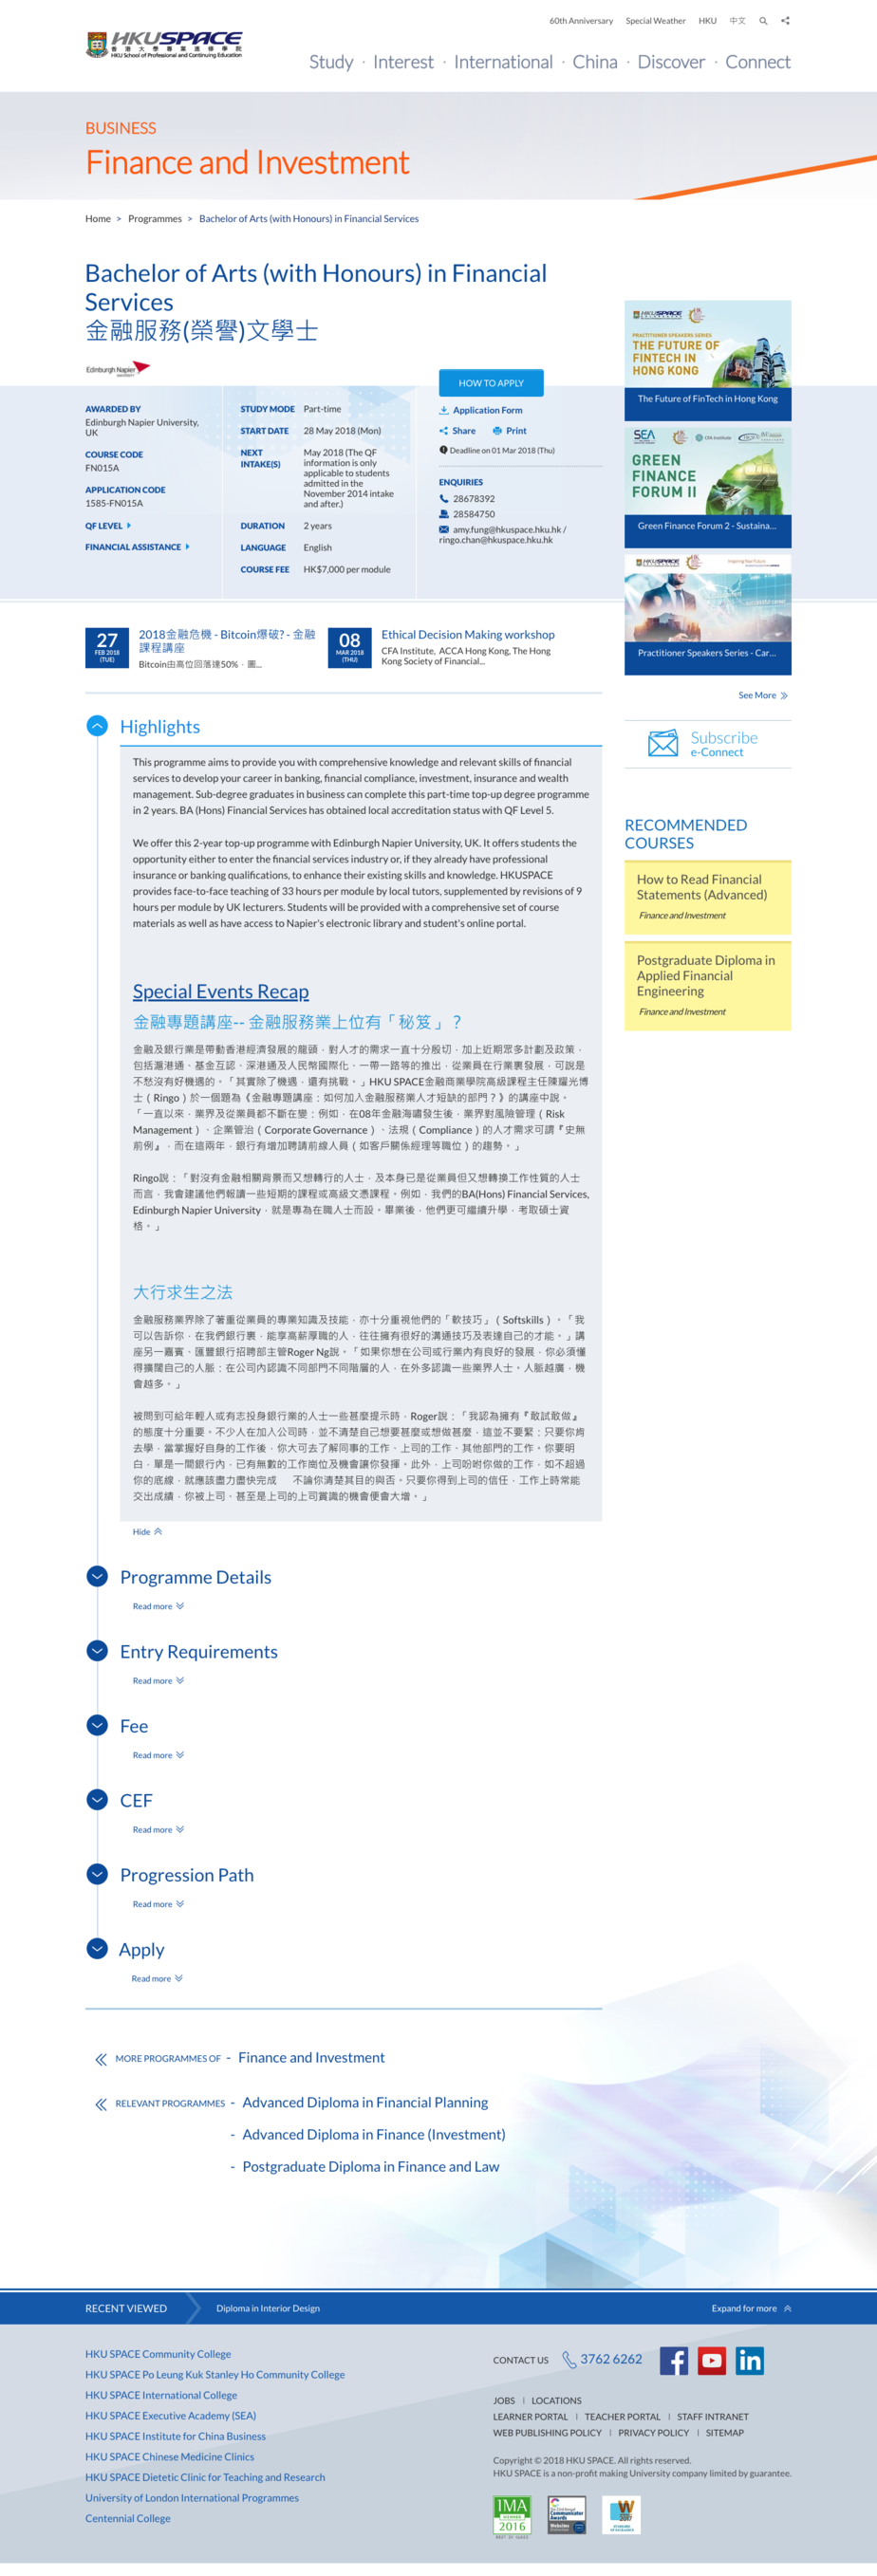 HKU SPACE website screenshot for desktop version 6 of 6